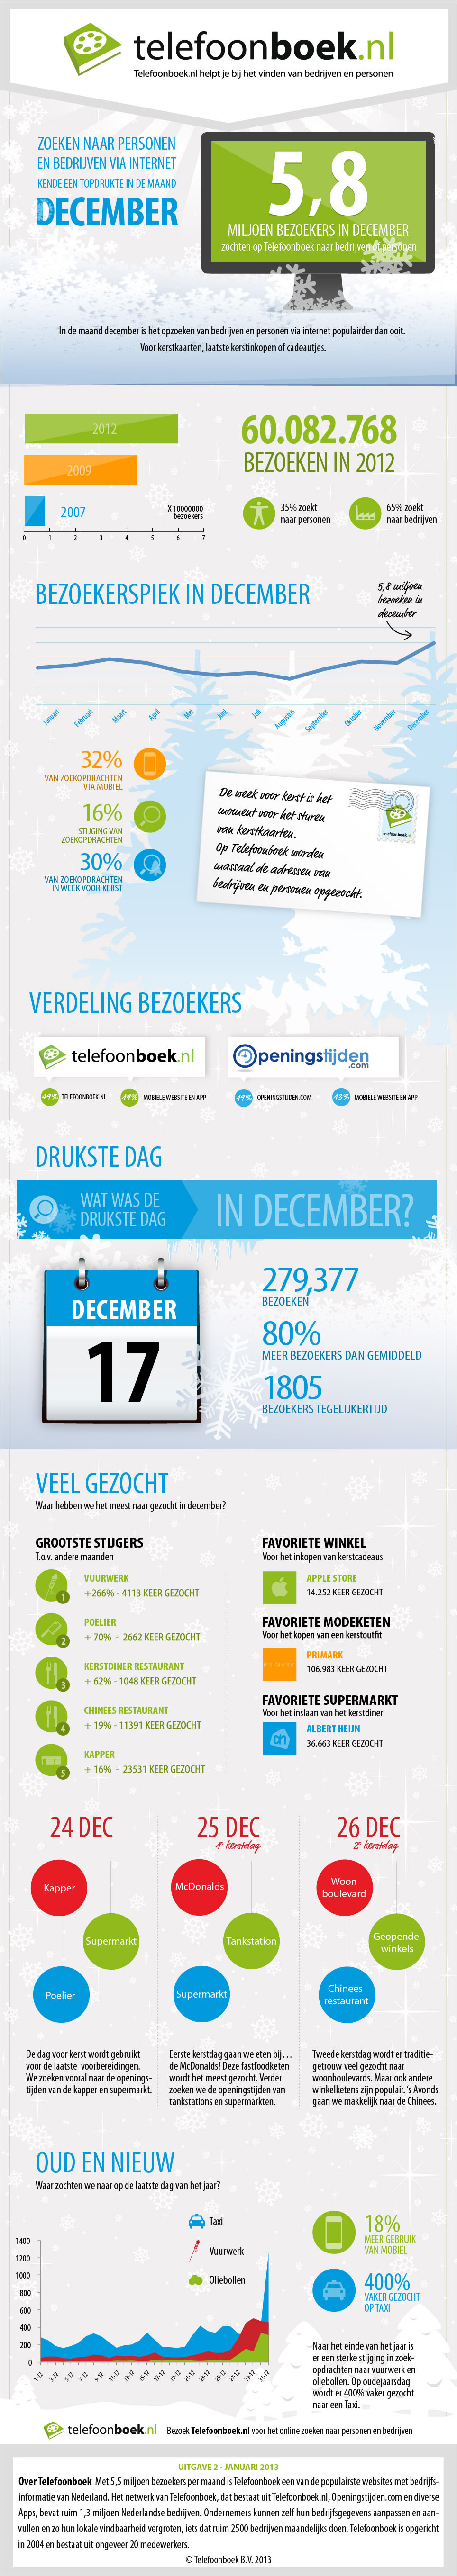 infographic telefoonboek december 2012